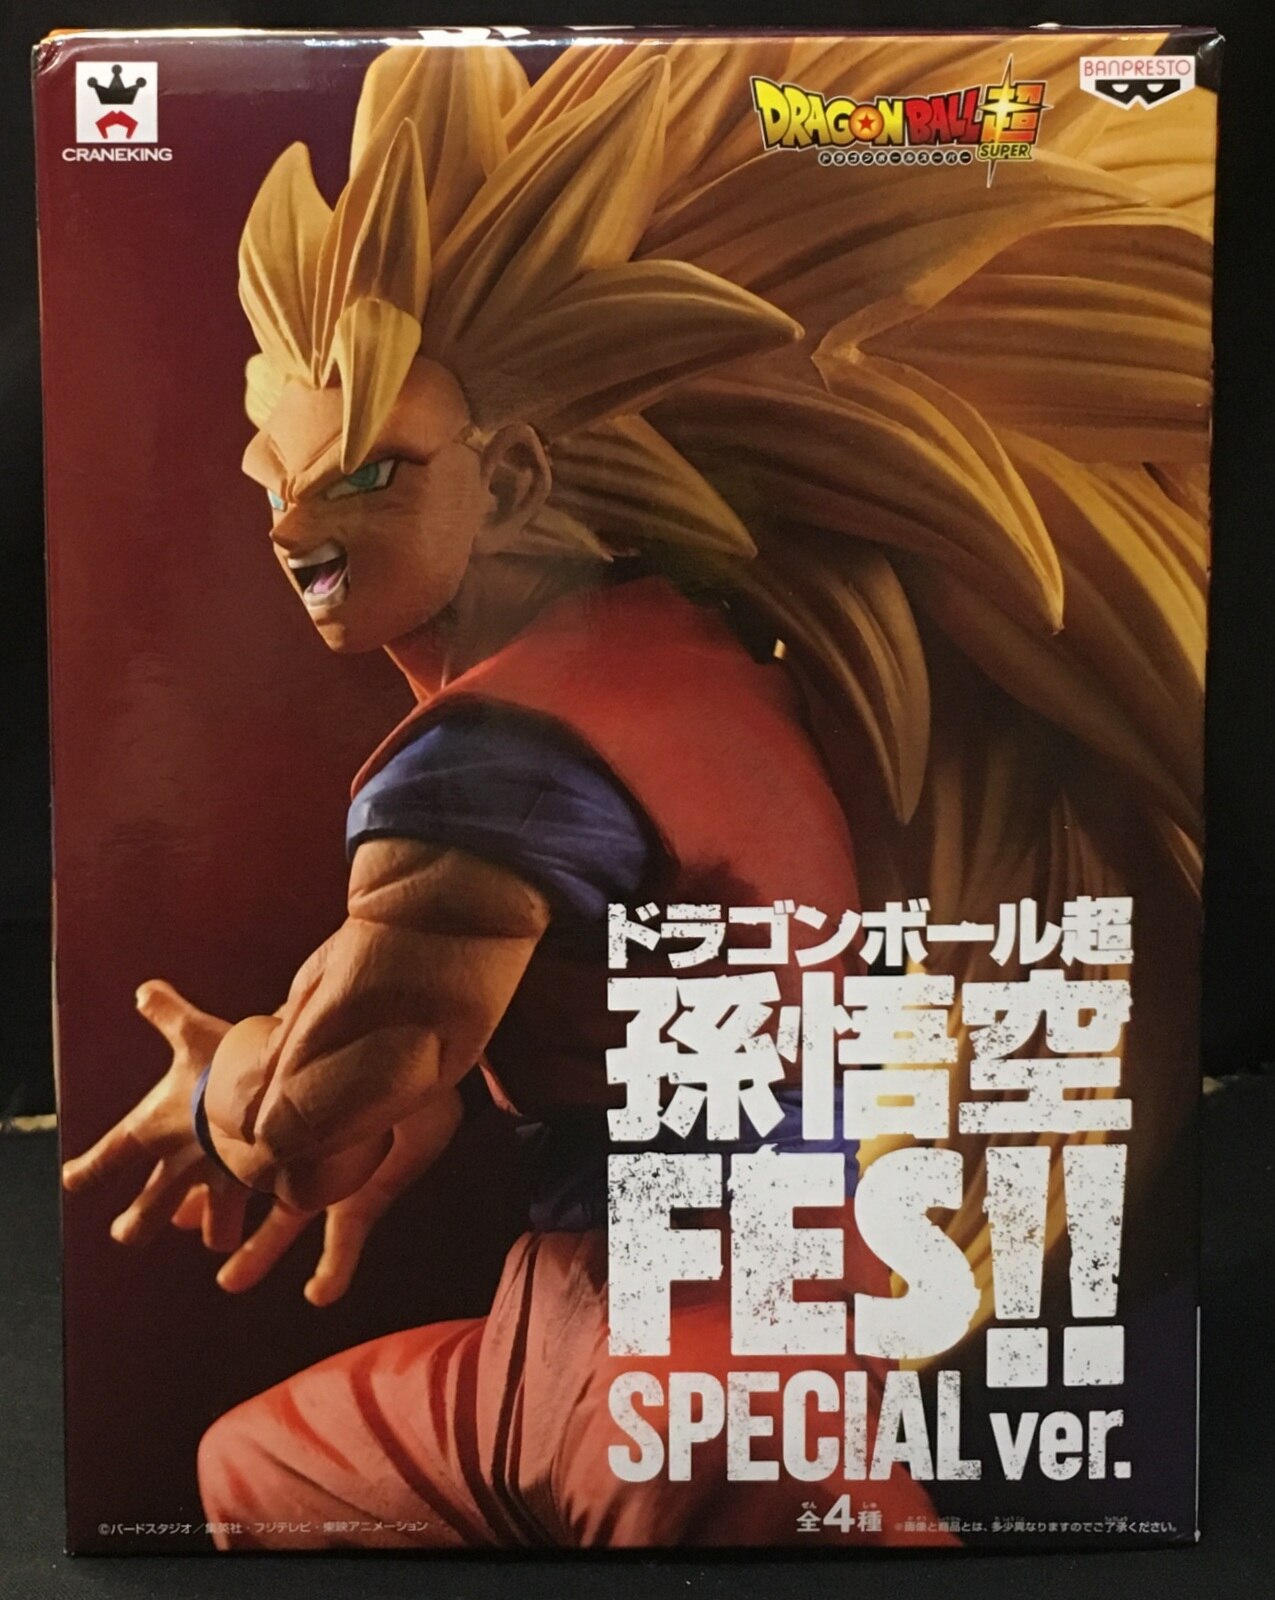 Daiko O Saiyajin - Capas dos volumes 1-12 do mangá de Dragon Ball Super.